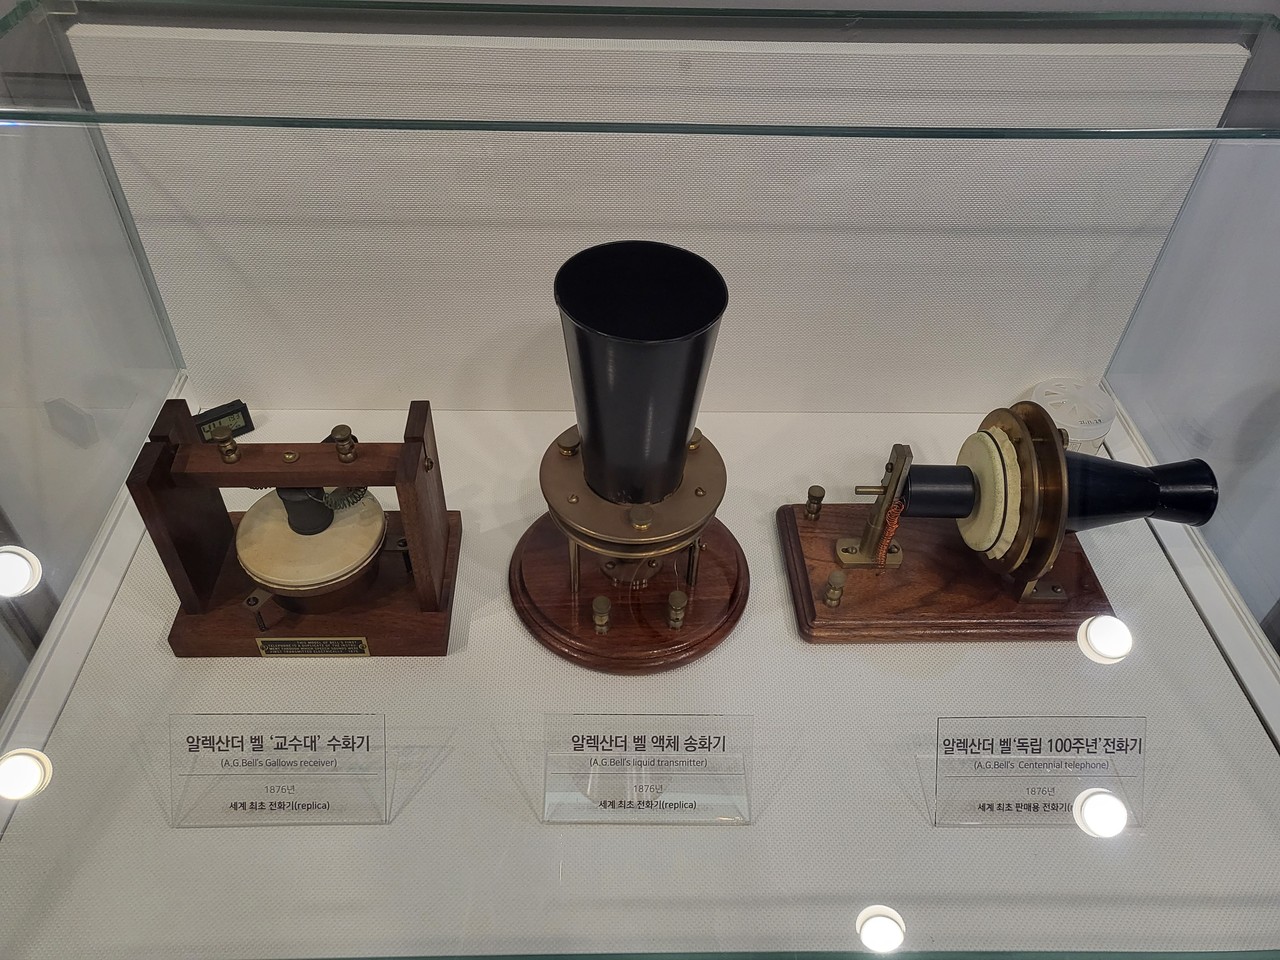 세계 최초의 전화기인 물전화기가 전시돼 있다.